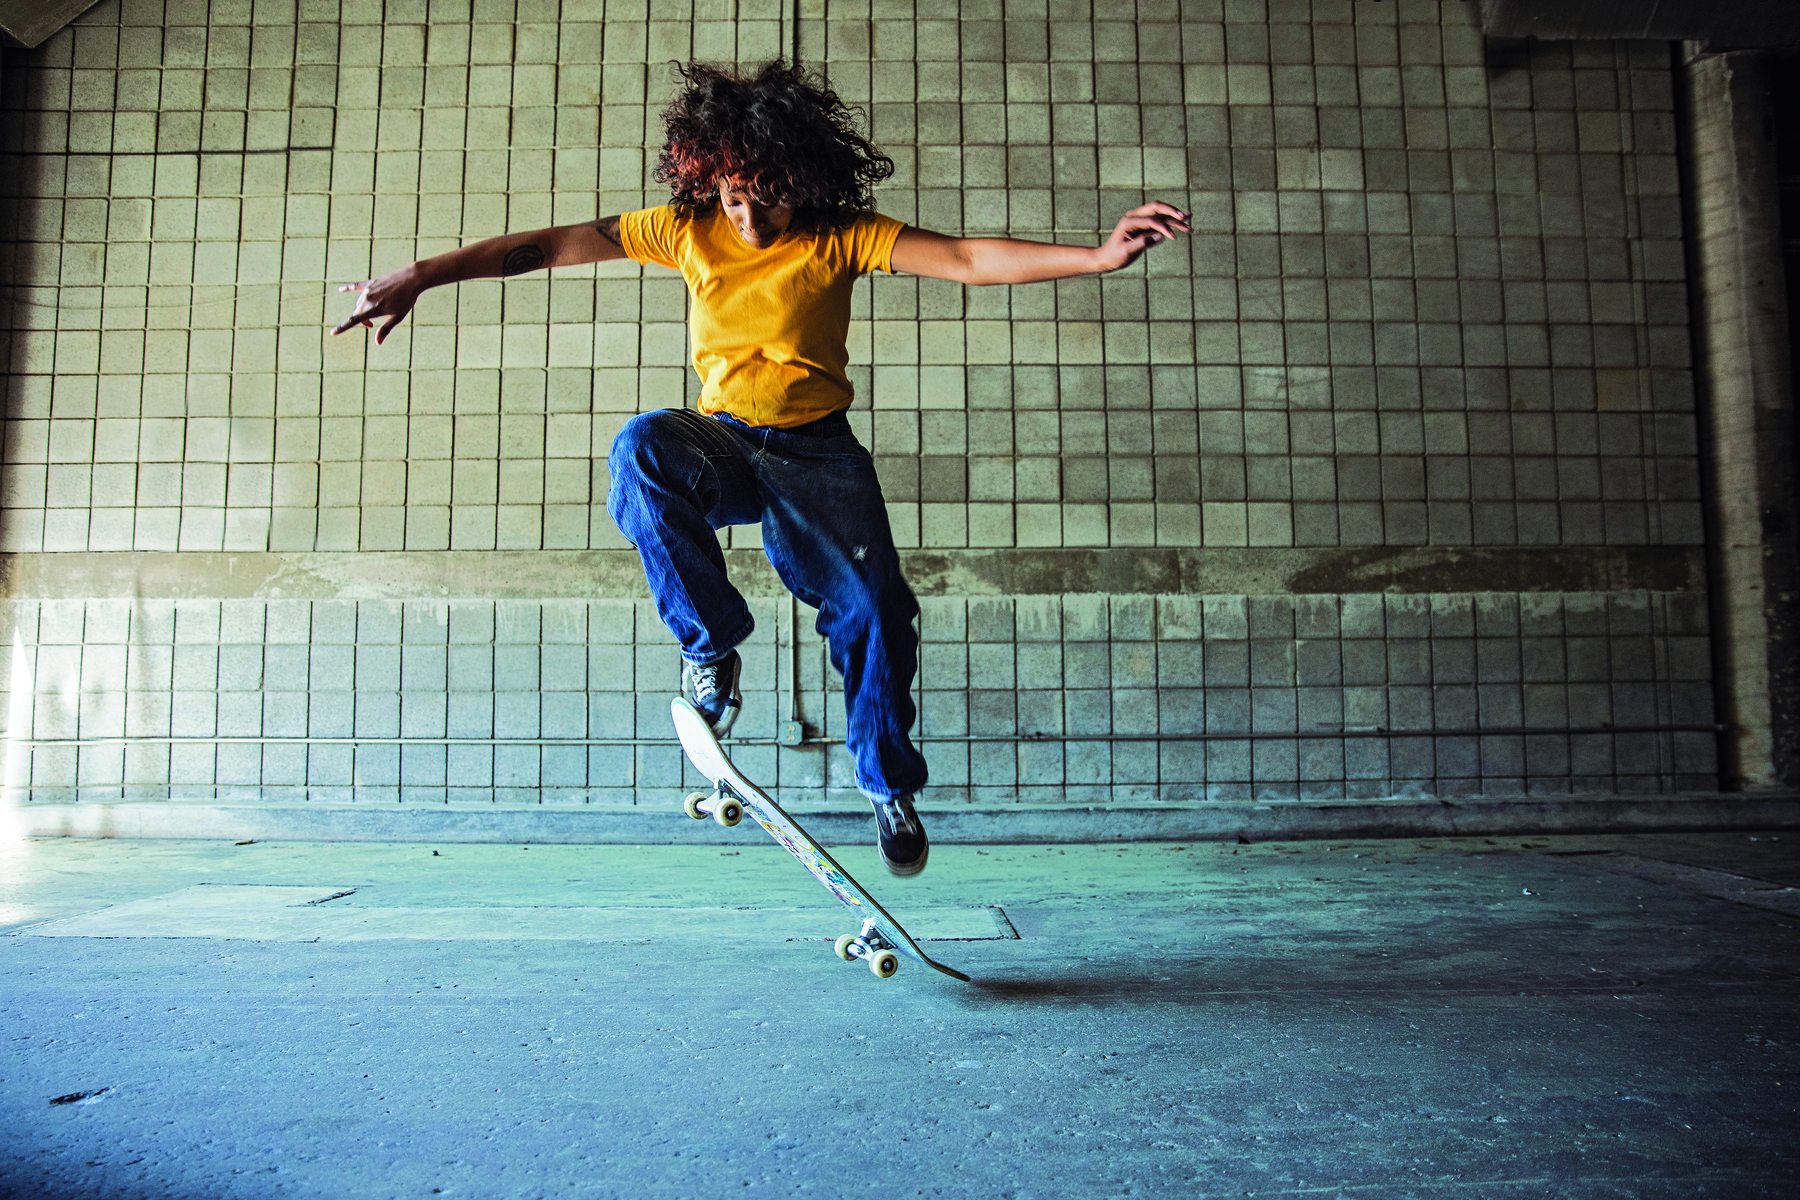 Fotografia. Mulher usando camiseta amarela, calça jeans e tênis. Ela está saltando sobre um skate com a perna direita dobrada e os braços abertos.